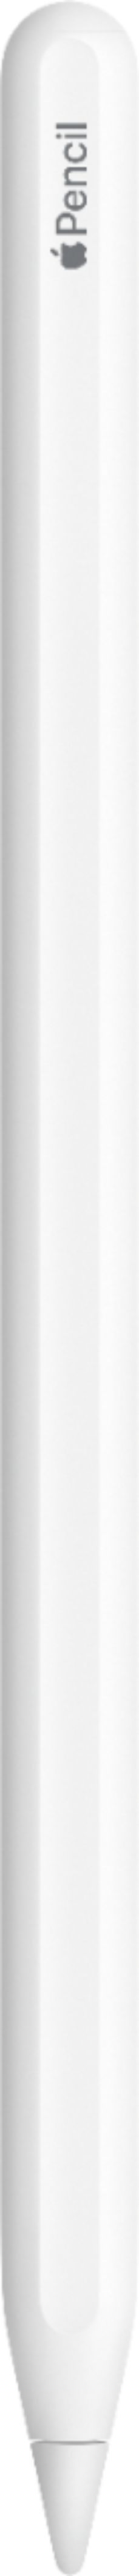 Apple Pencil (2nd Generation) White MU8F2AM/A - Best Buy | Best Buy U.S.